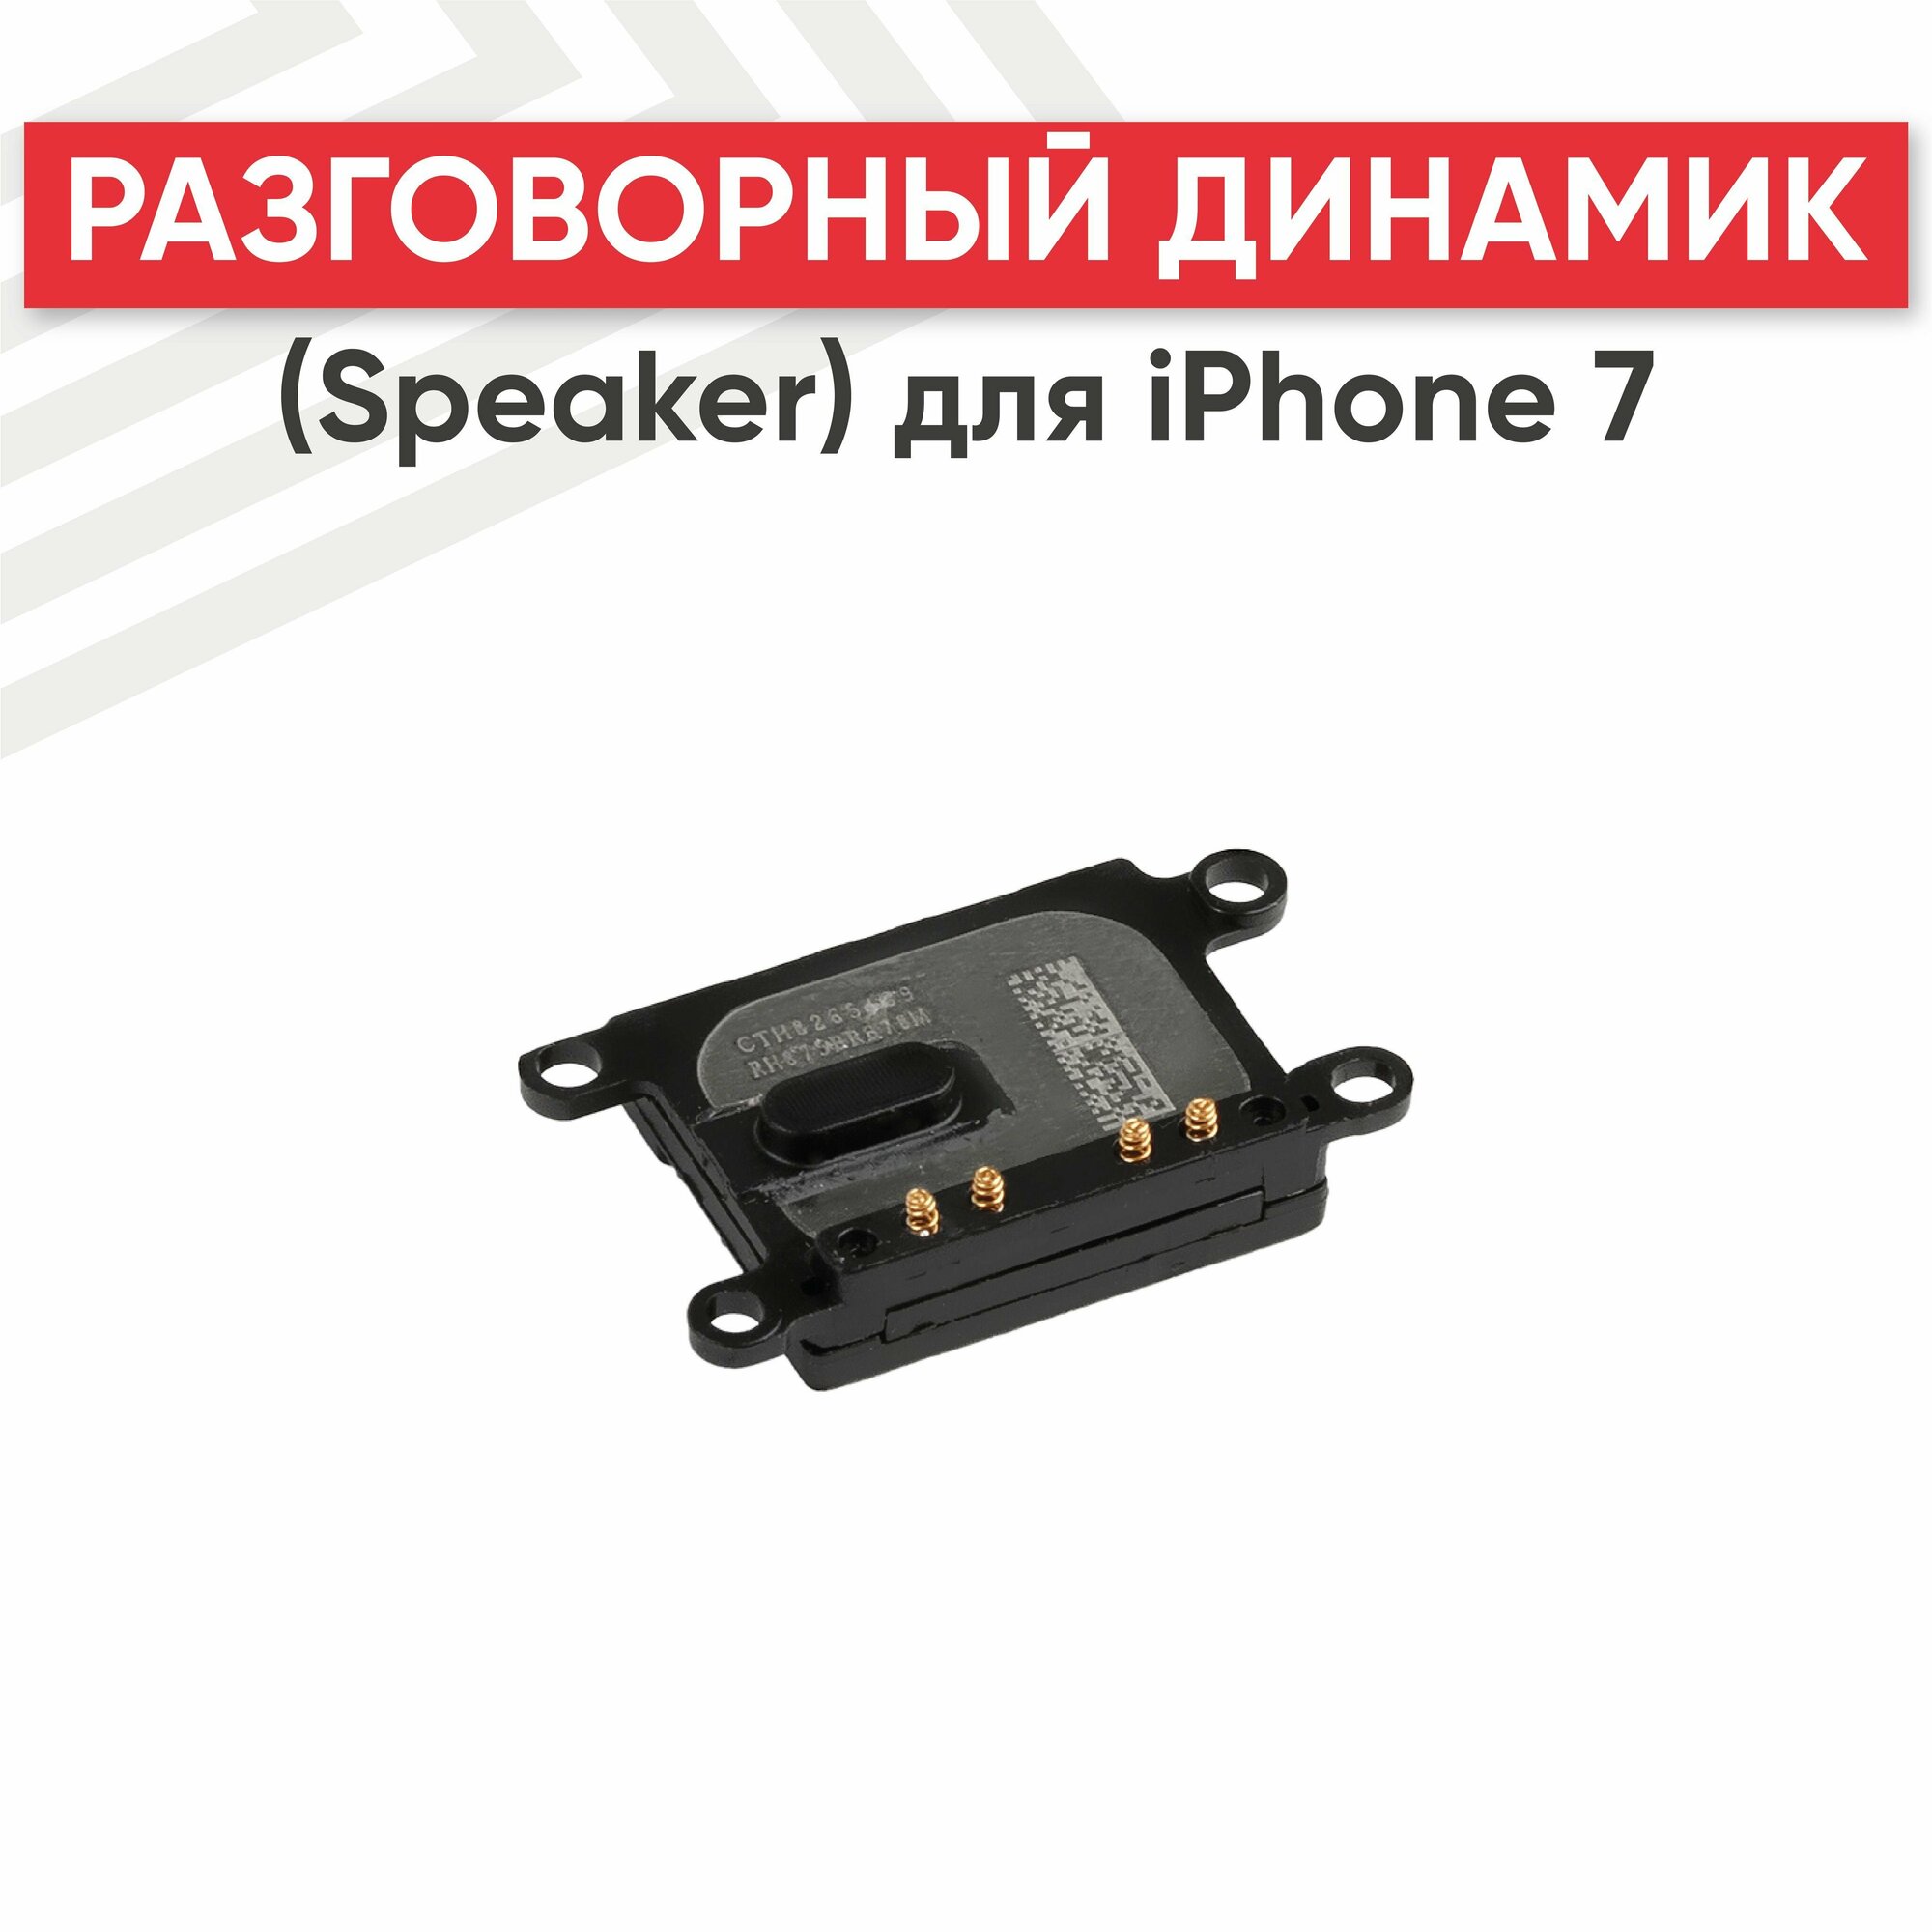 Разговорный динамик (Speaker) для мобильного телефона (смартфона) Apple iPhone 7